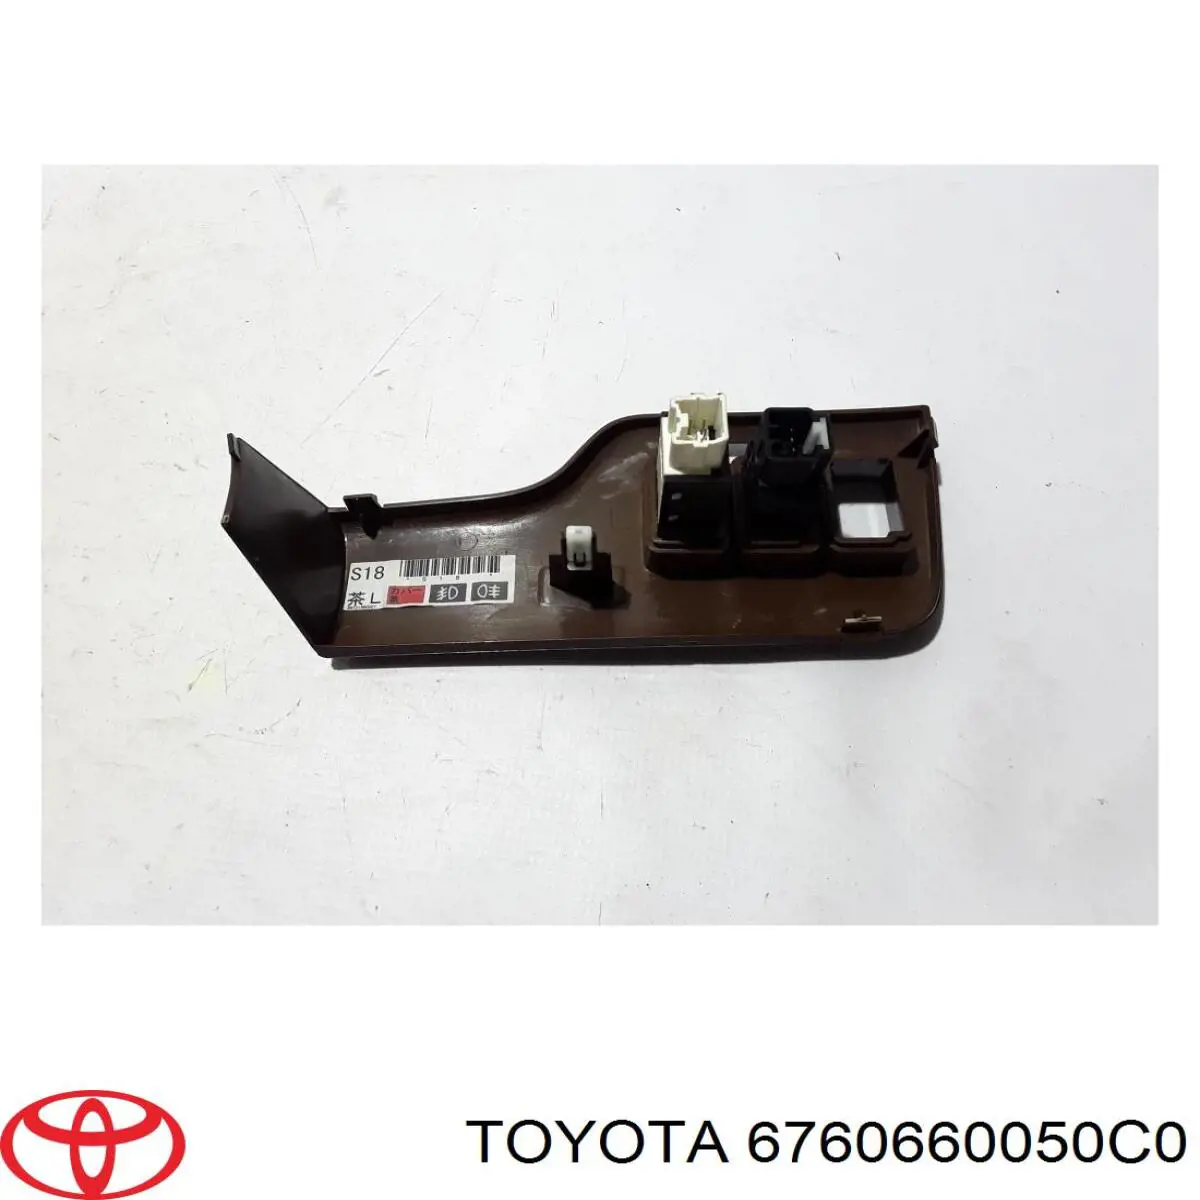 Manecilla de puerta, equipamiento habitáculo, trasera izquierda para Toyota Land Cruiser (J150)